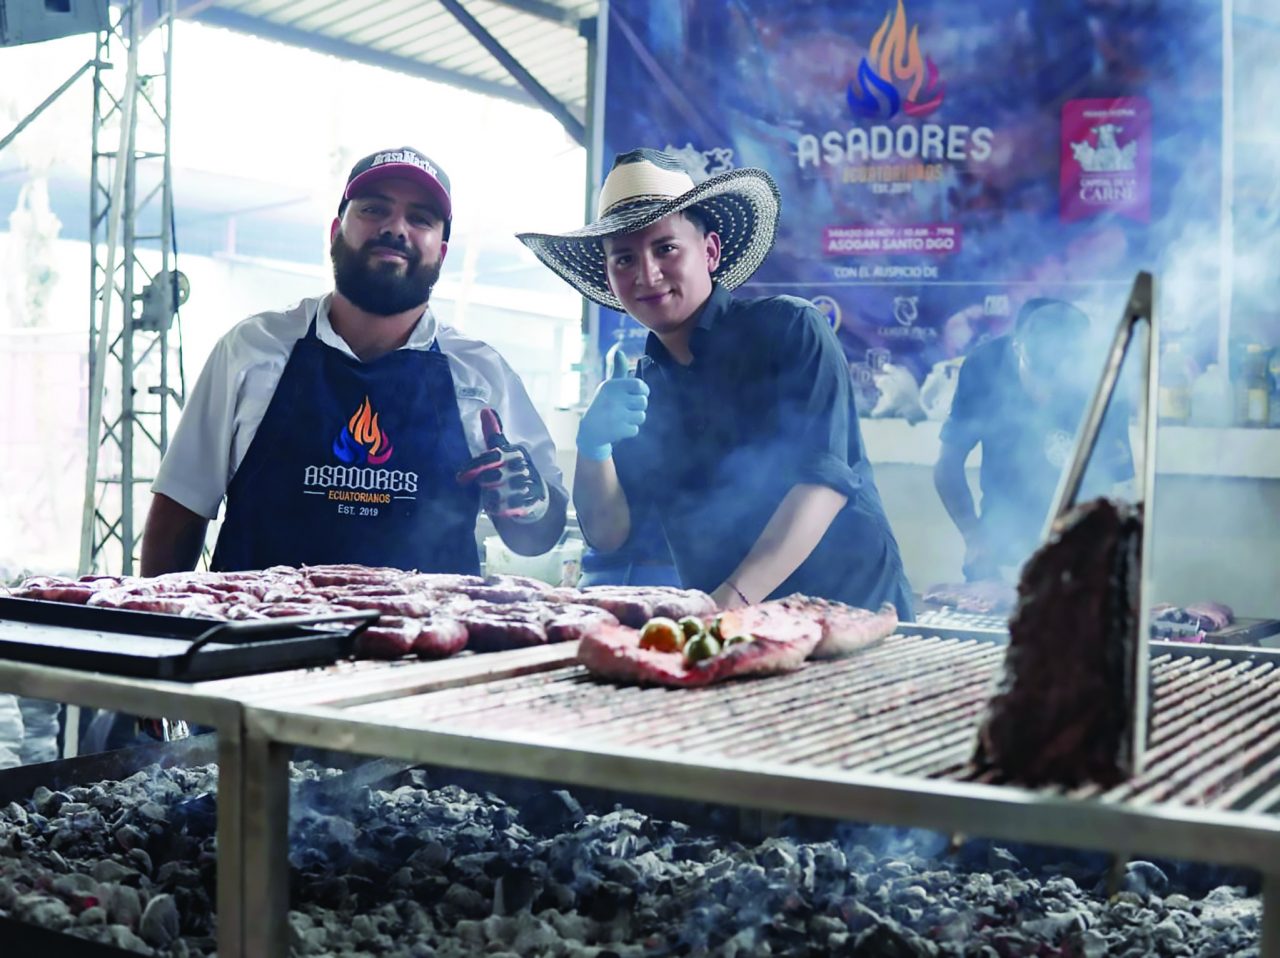 EVENTOS. Parrilleros de otras ciudades han llegado a Santo Domingo a participar de festivales de la carne.